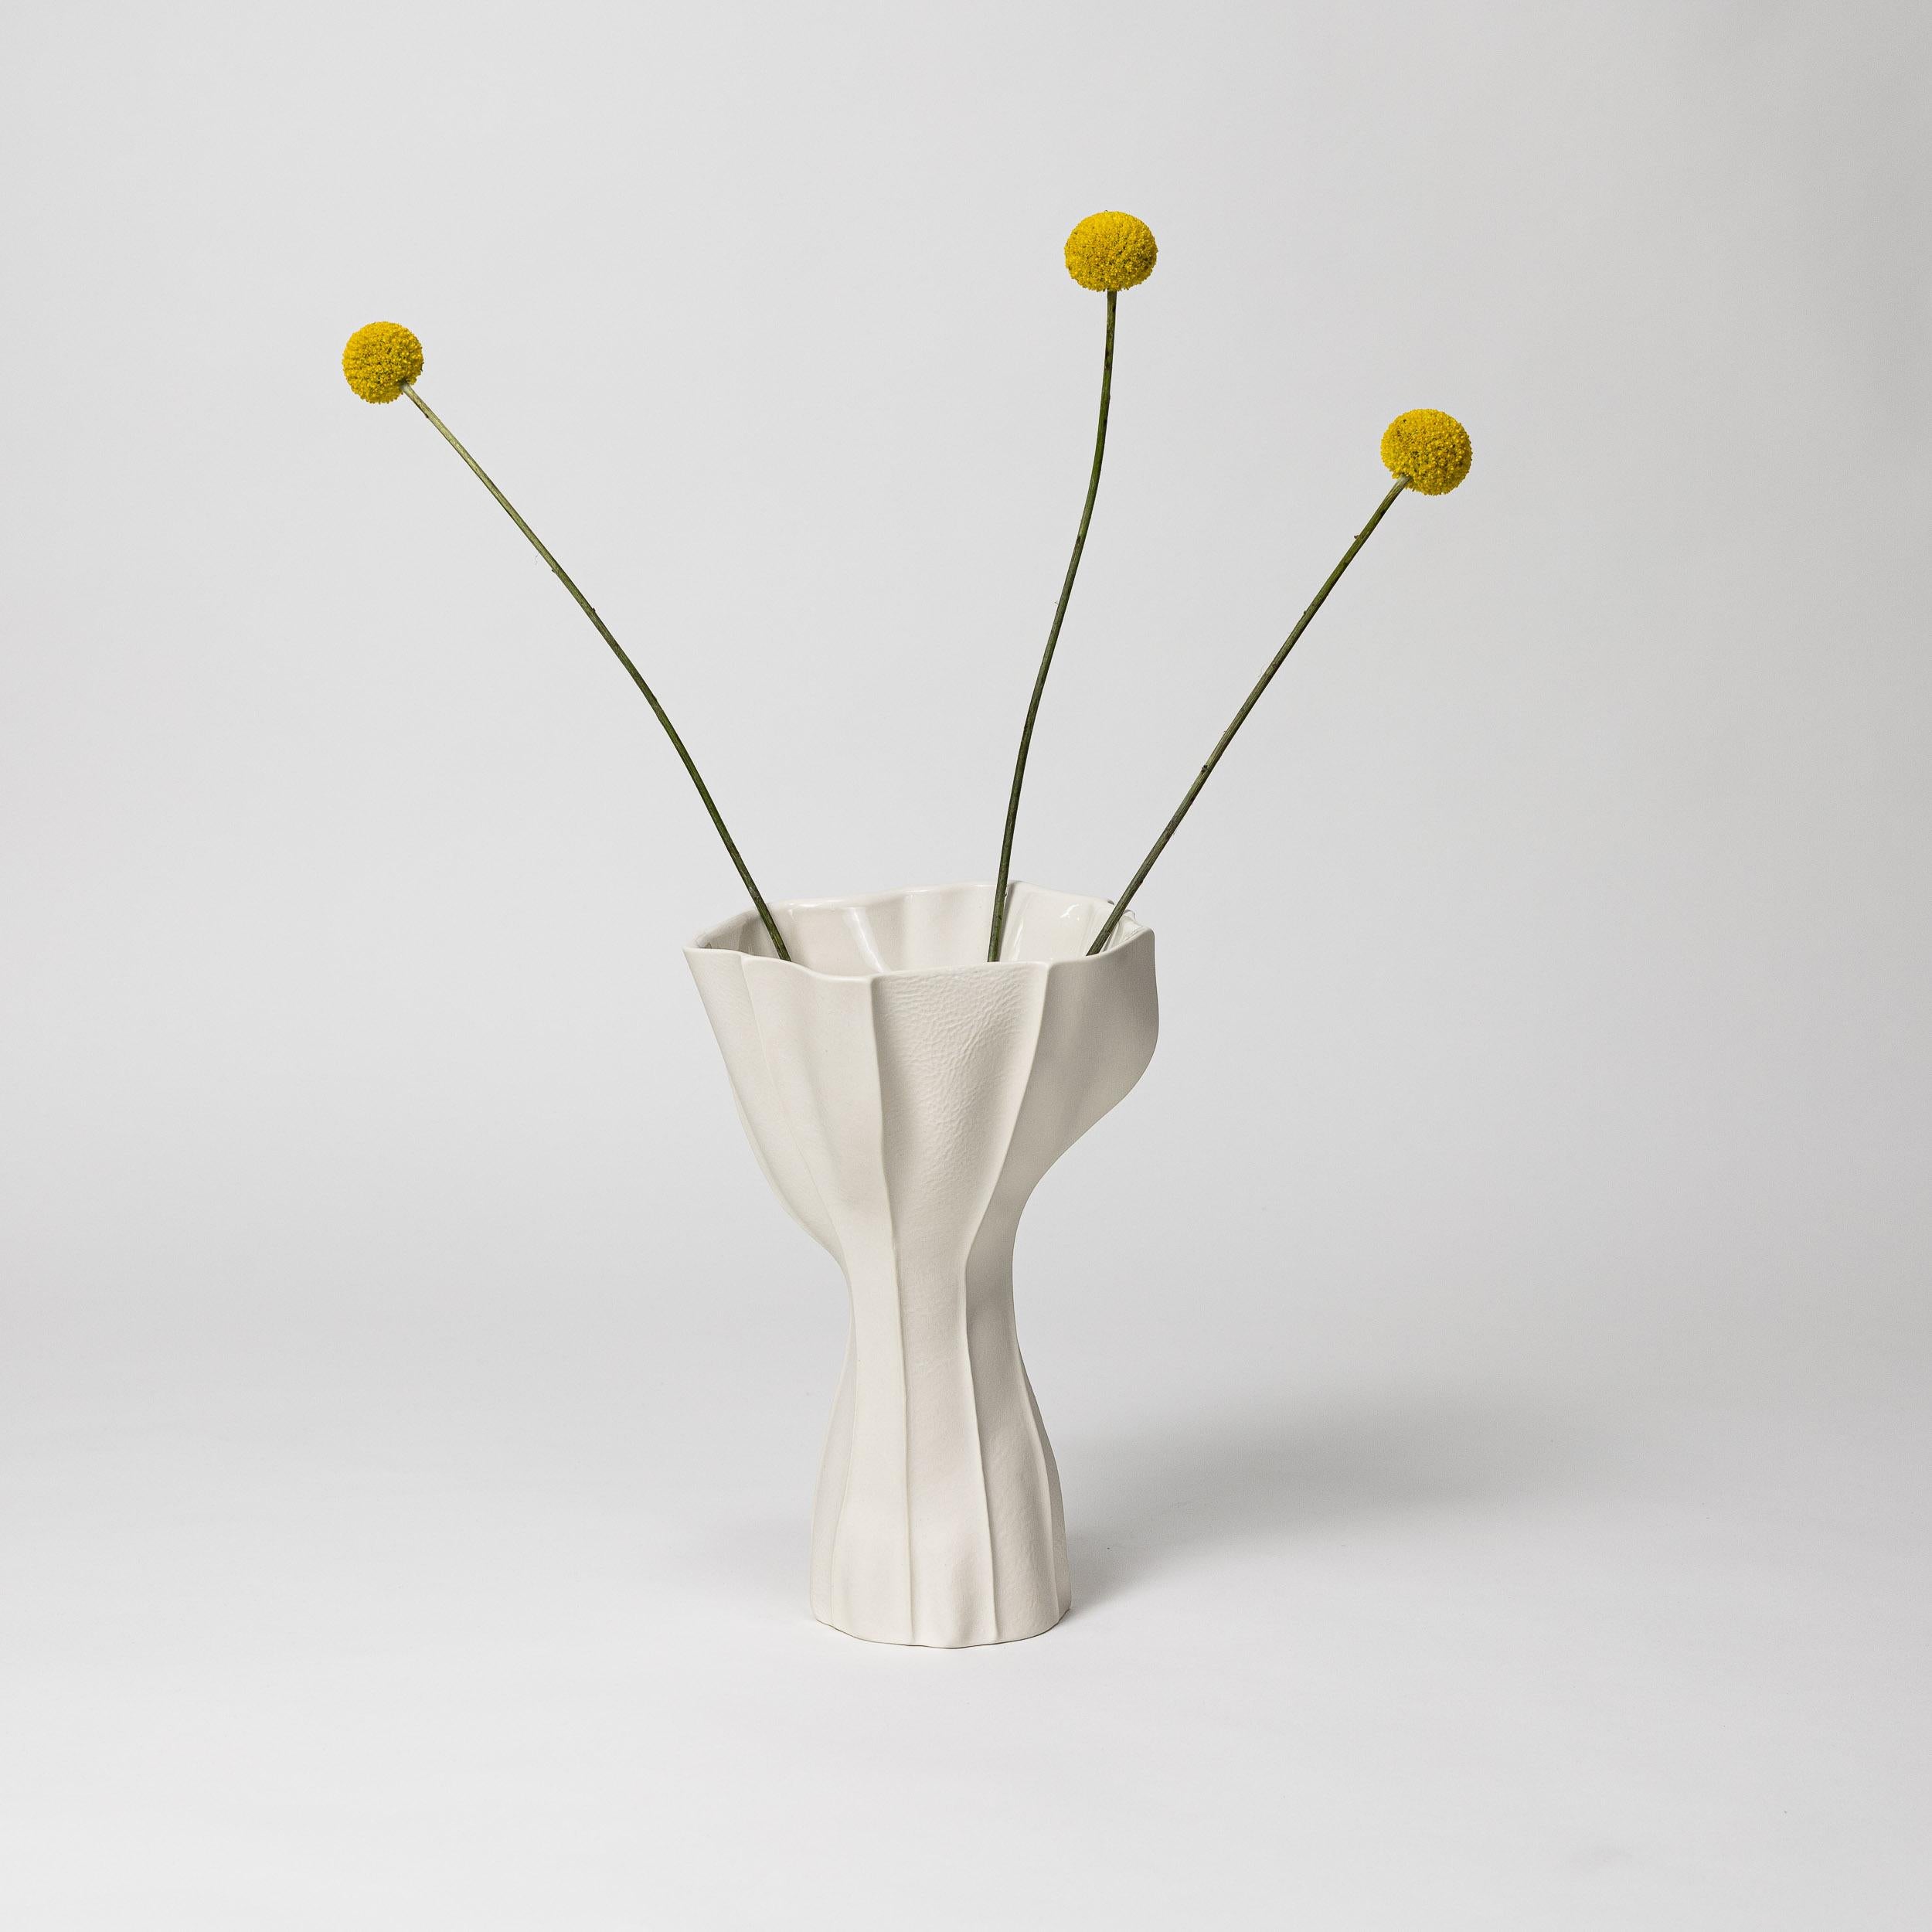 Un vase sculptural et organique en porcelaine avec une surface extérieure texturée en cuir et un intérieur glacé brillant. En raison du processus de production, chaque article est unique. 

Une multitude de panneaux de cuir sont cousus ensemble pour